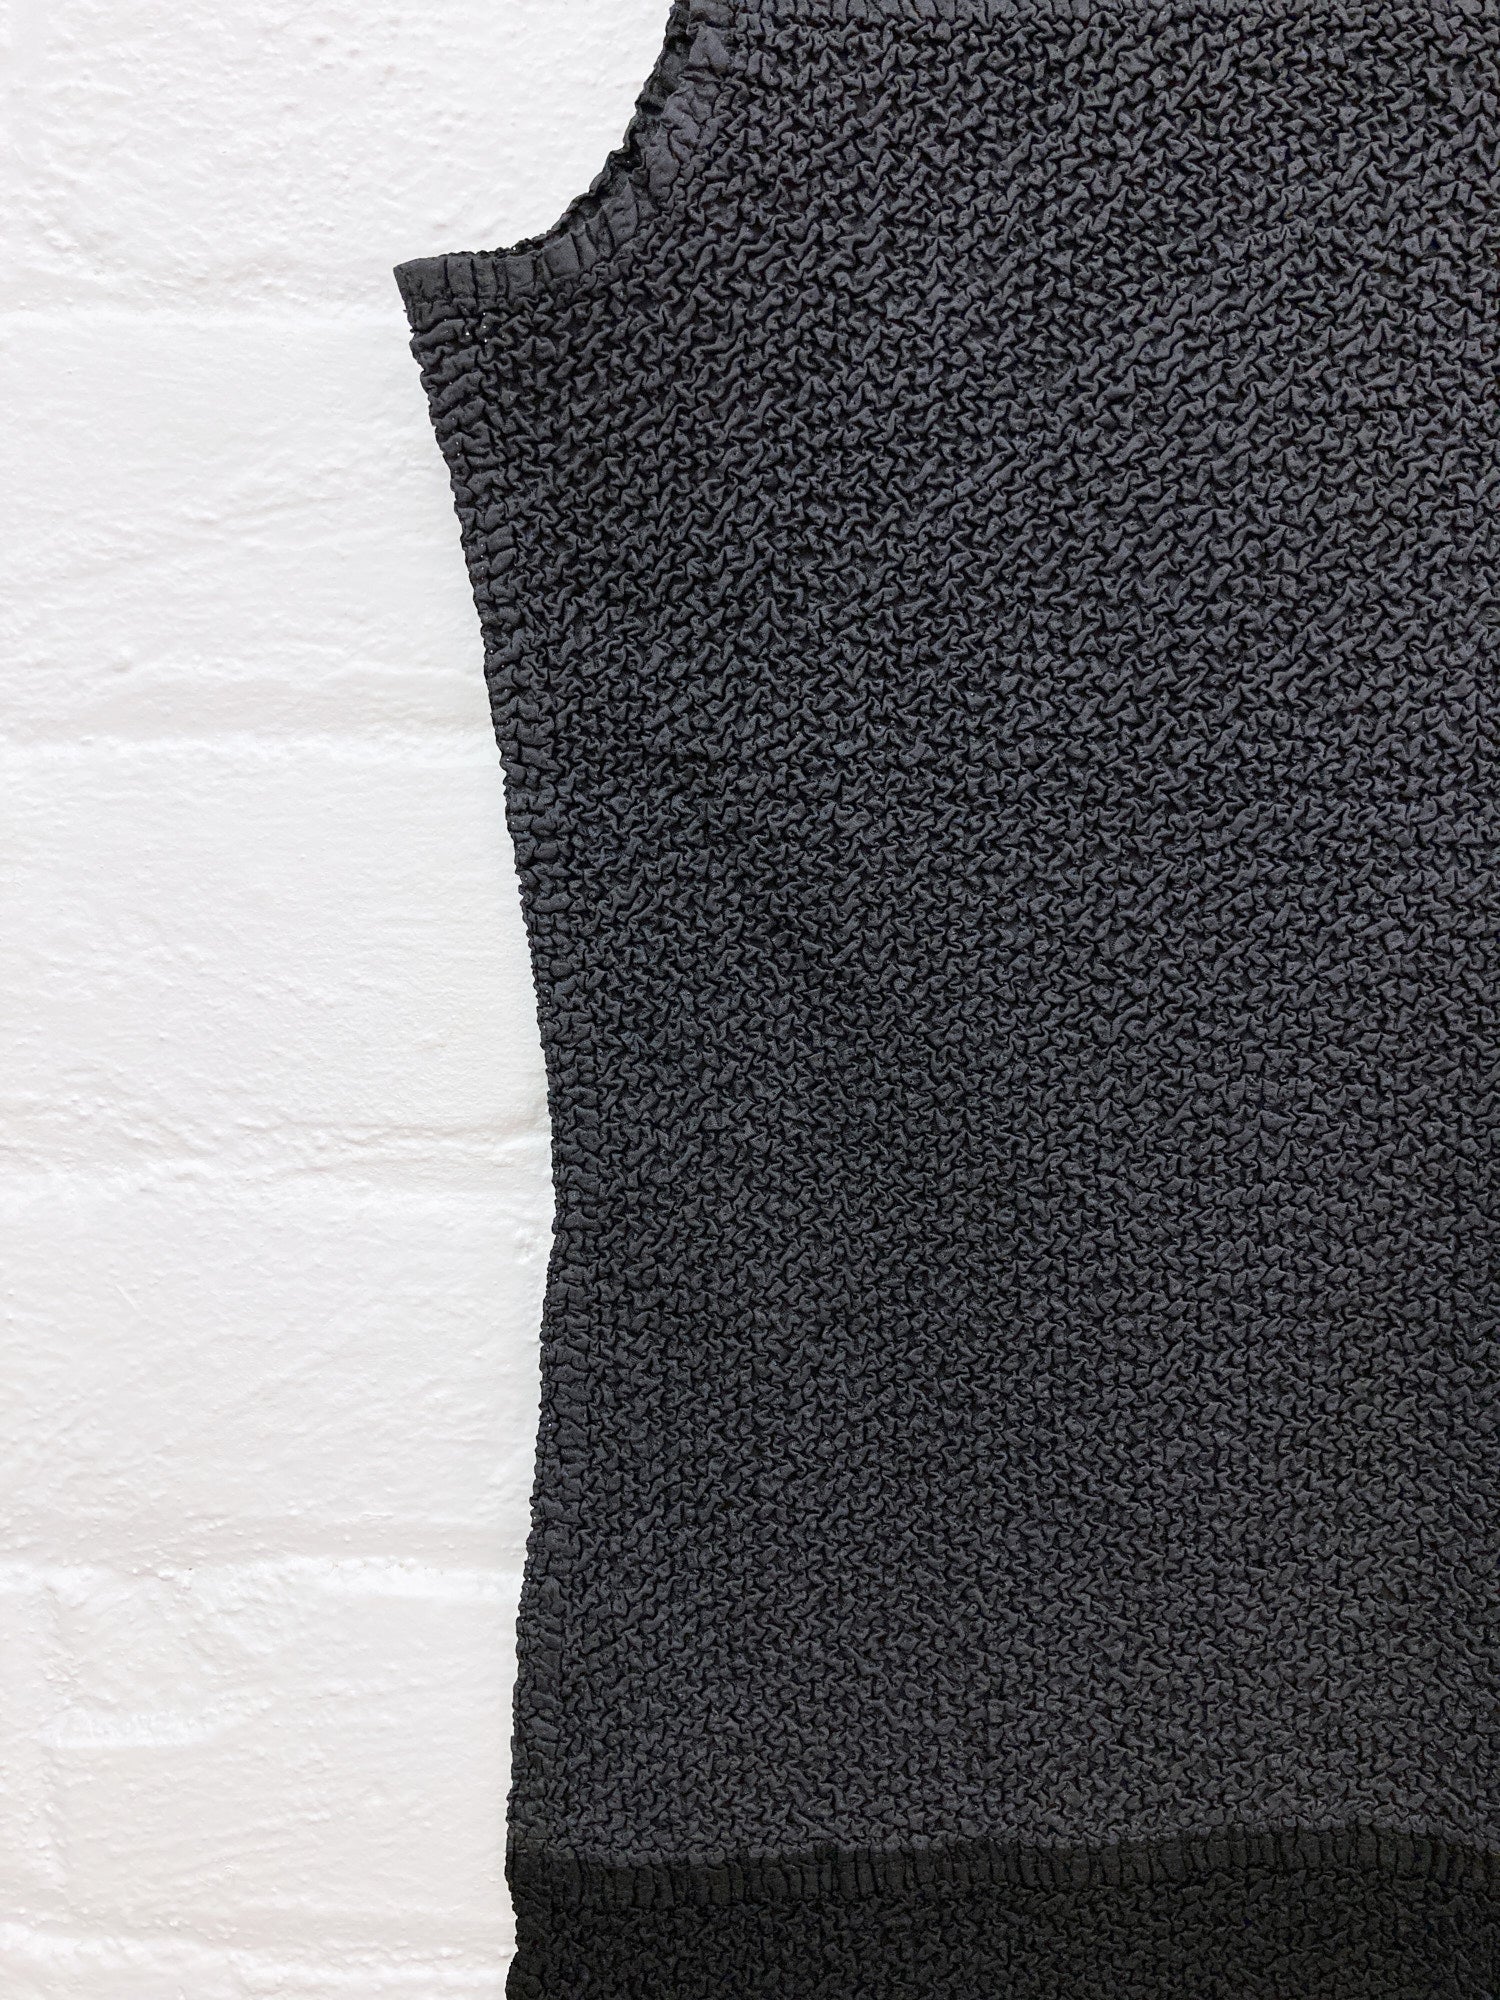 Yoshiki Hishinuma Peplum grey and black wrinkled sleeveless top - size 2 S M